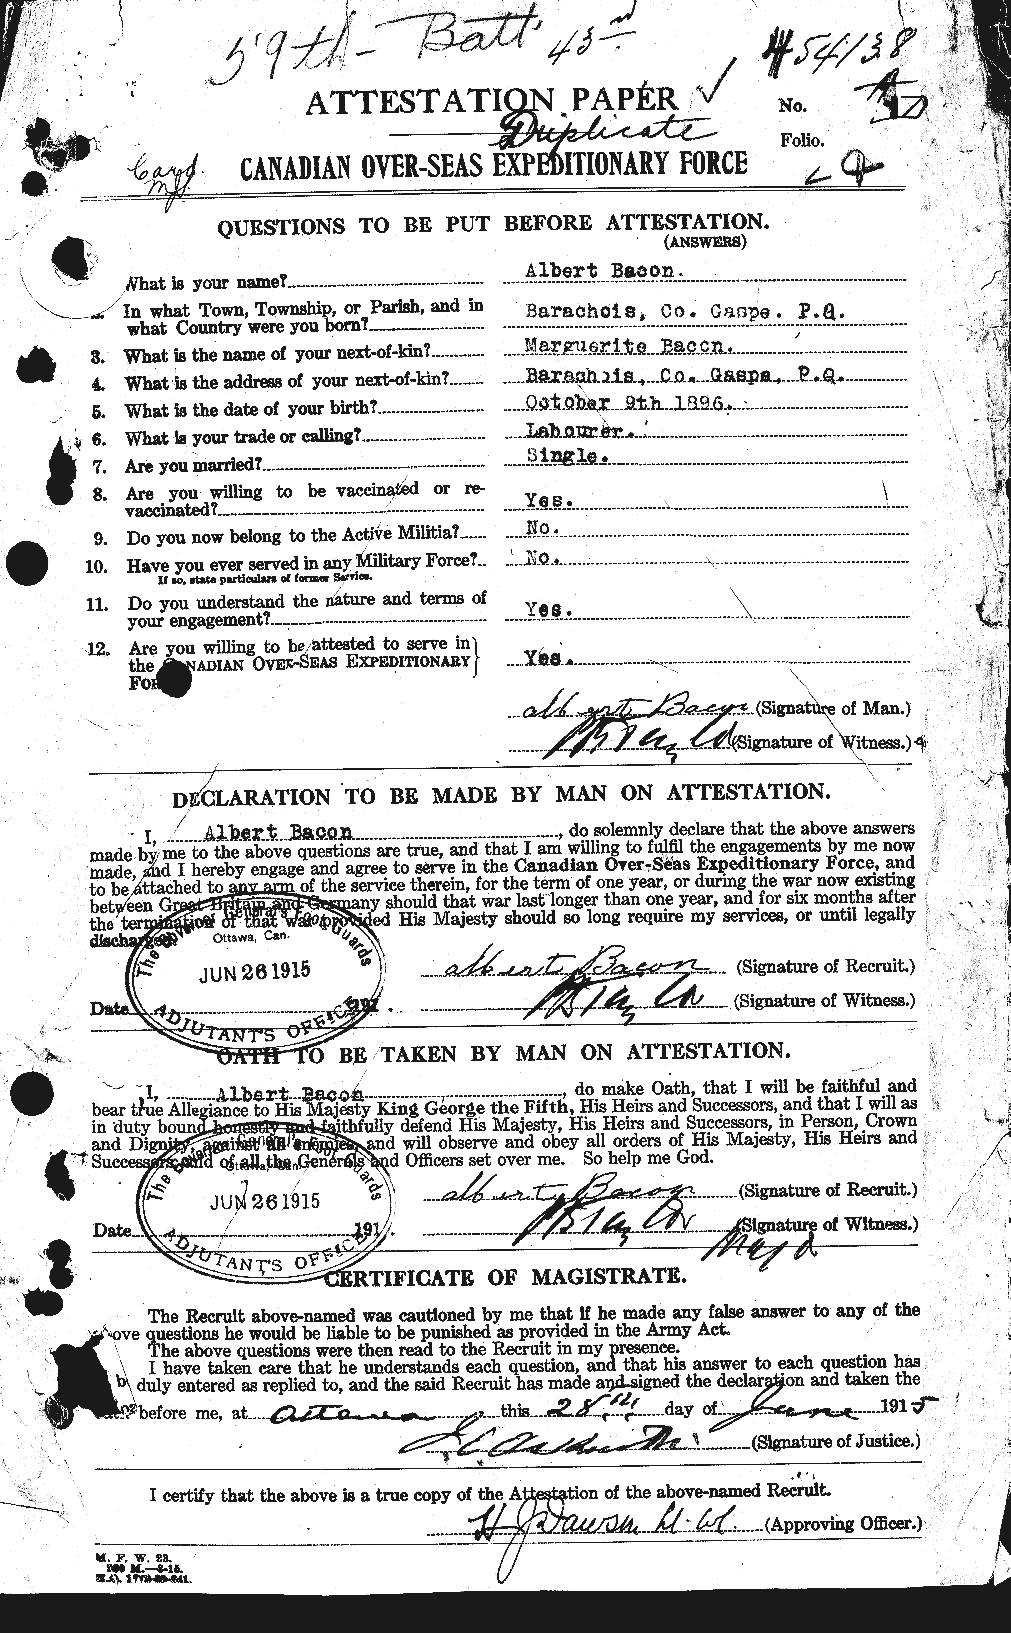 Dossiers du Personnel de la Première Guerre mondiale - CEC 217928a